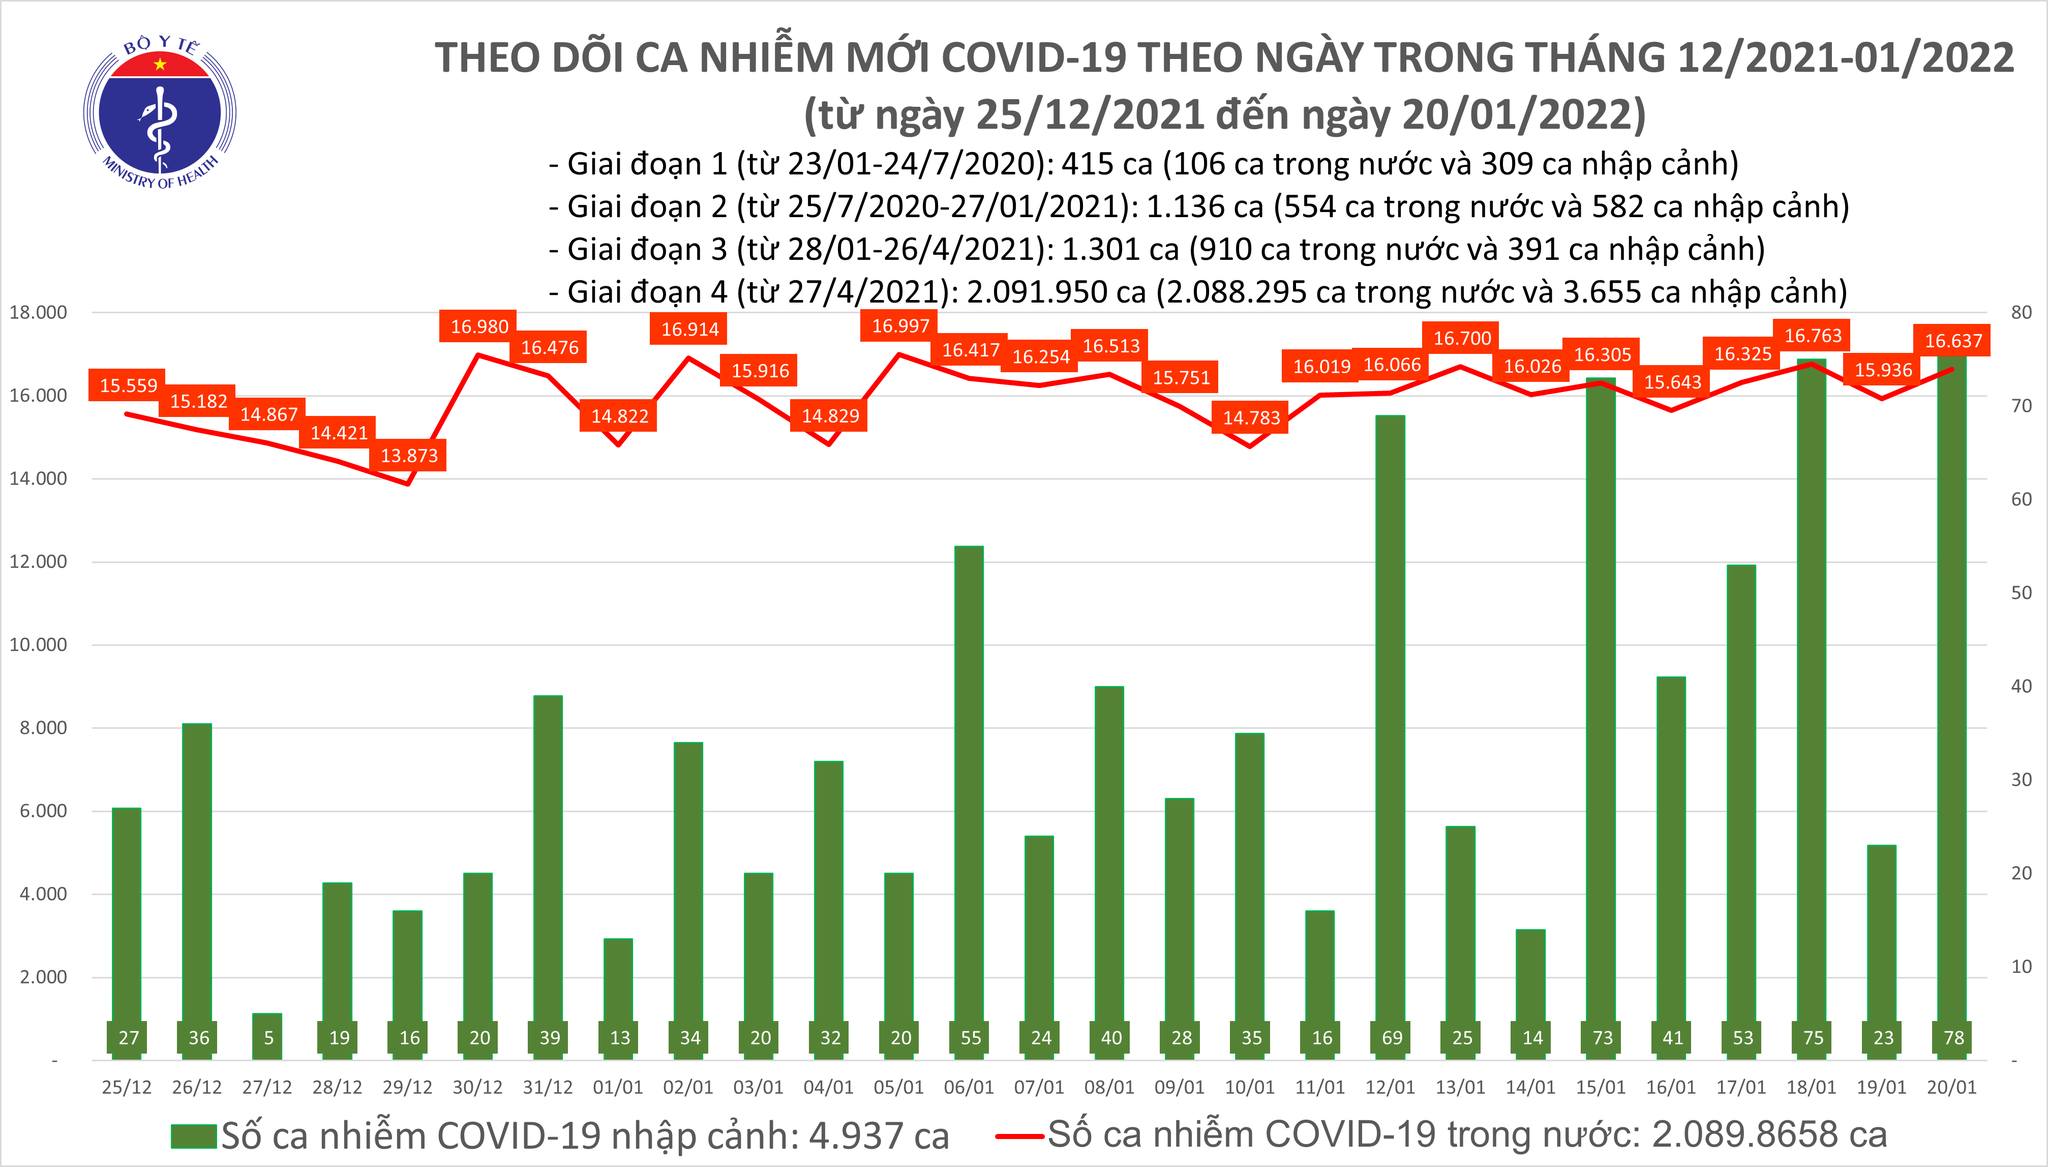 Ngày 20/01, thêm 16.715 ca nhiễm Covid-19 mới, tăng hơn 701 ca so với ngày hôm qua